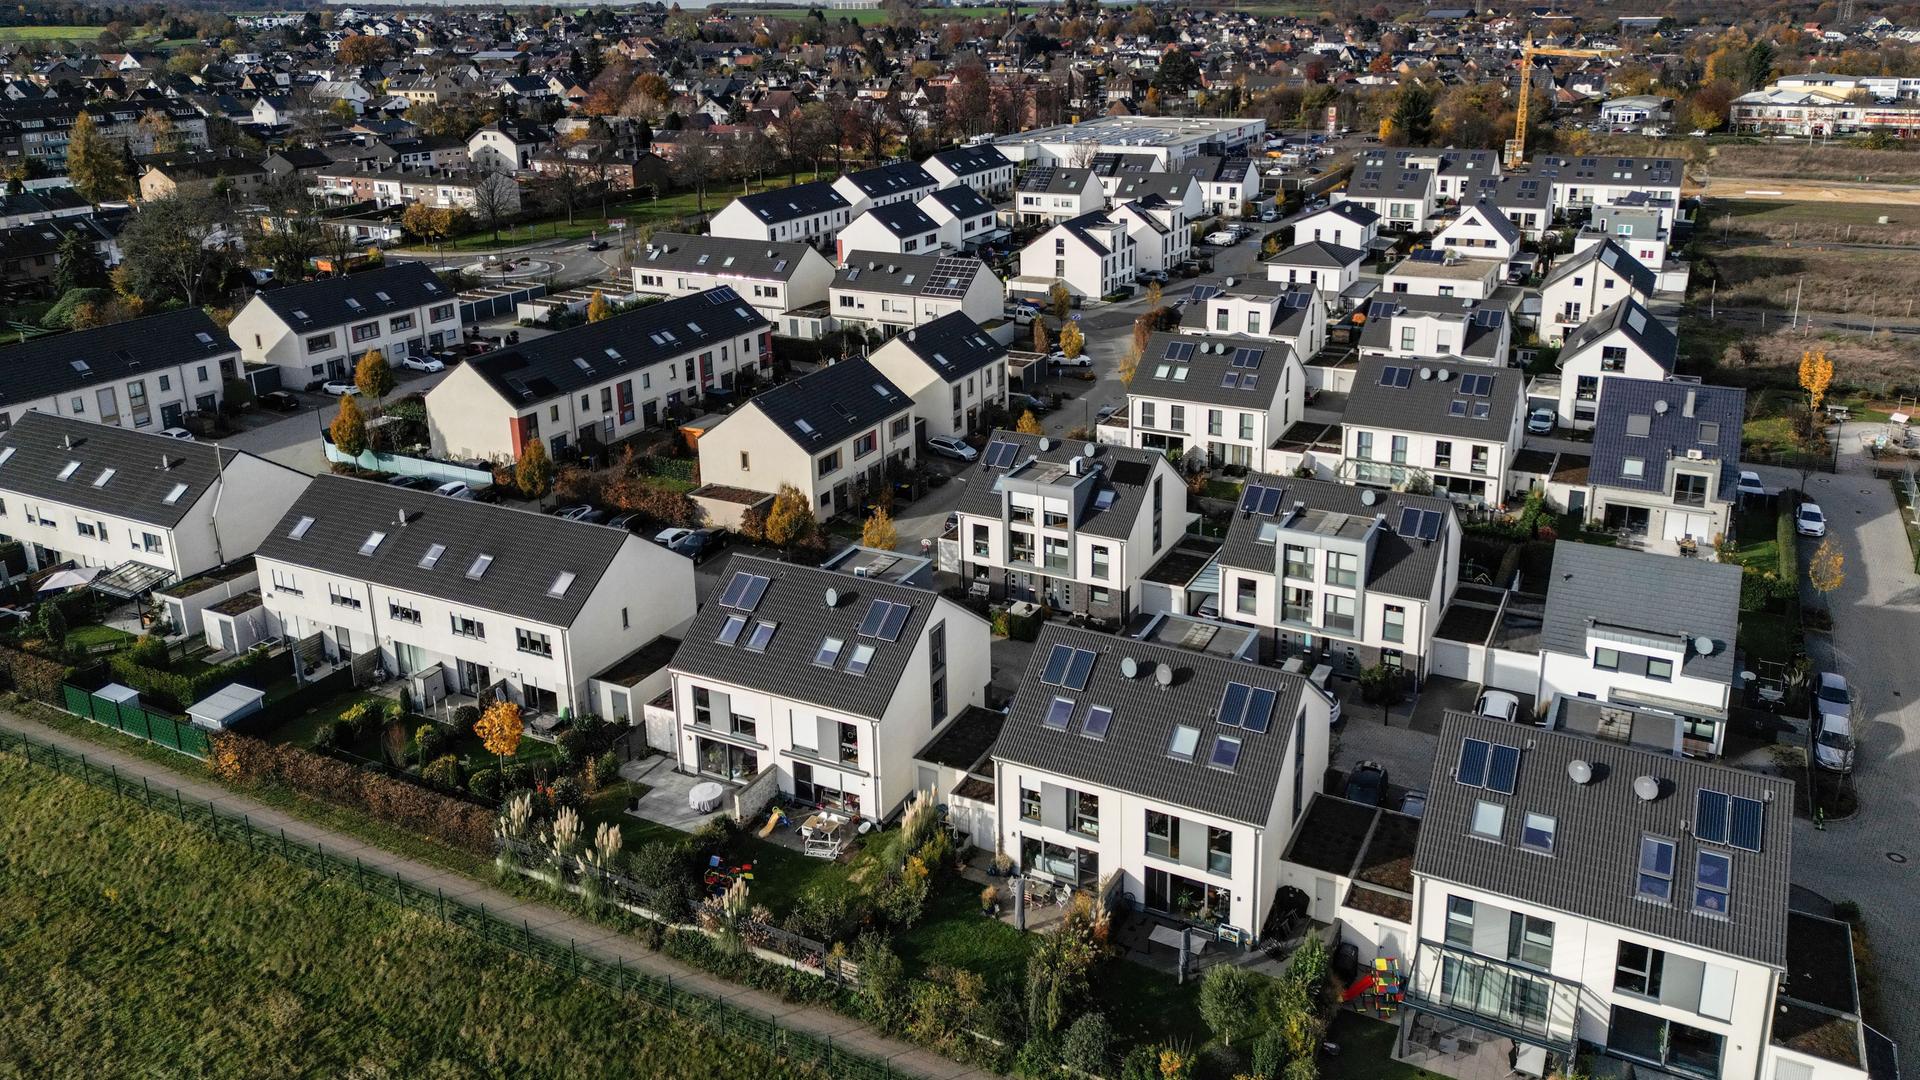 Neue Reihenhäuser im Rohbau in Glessen, einem Stadtteil von Bergheim, aus der Luft fotografiert.